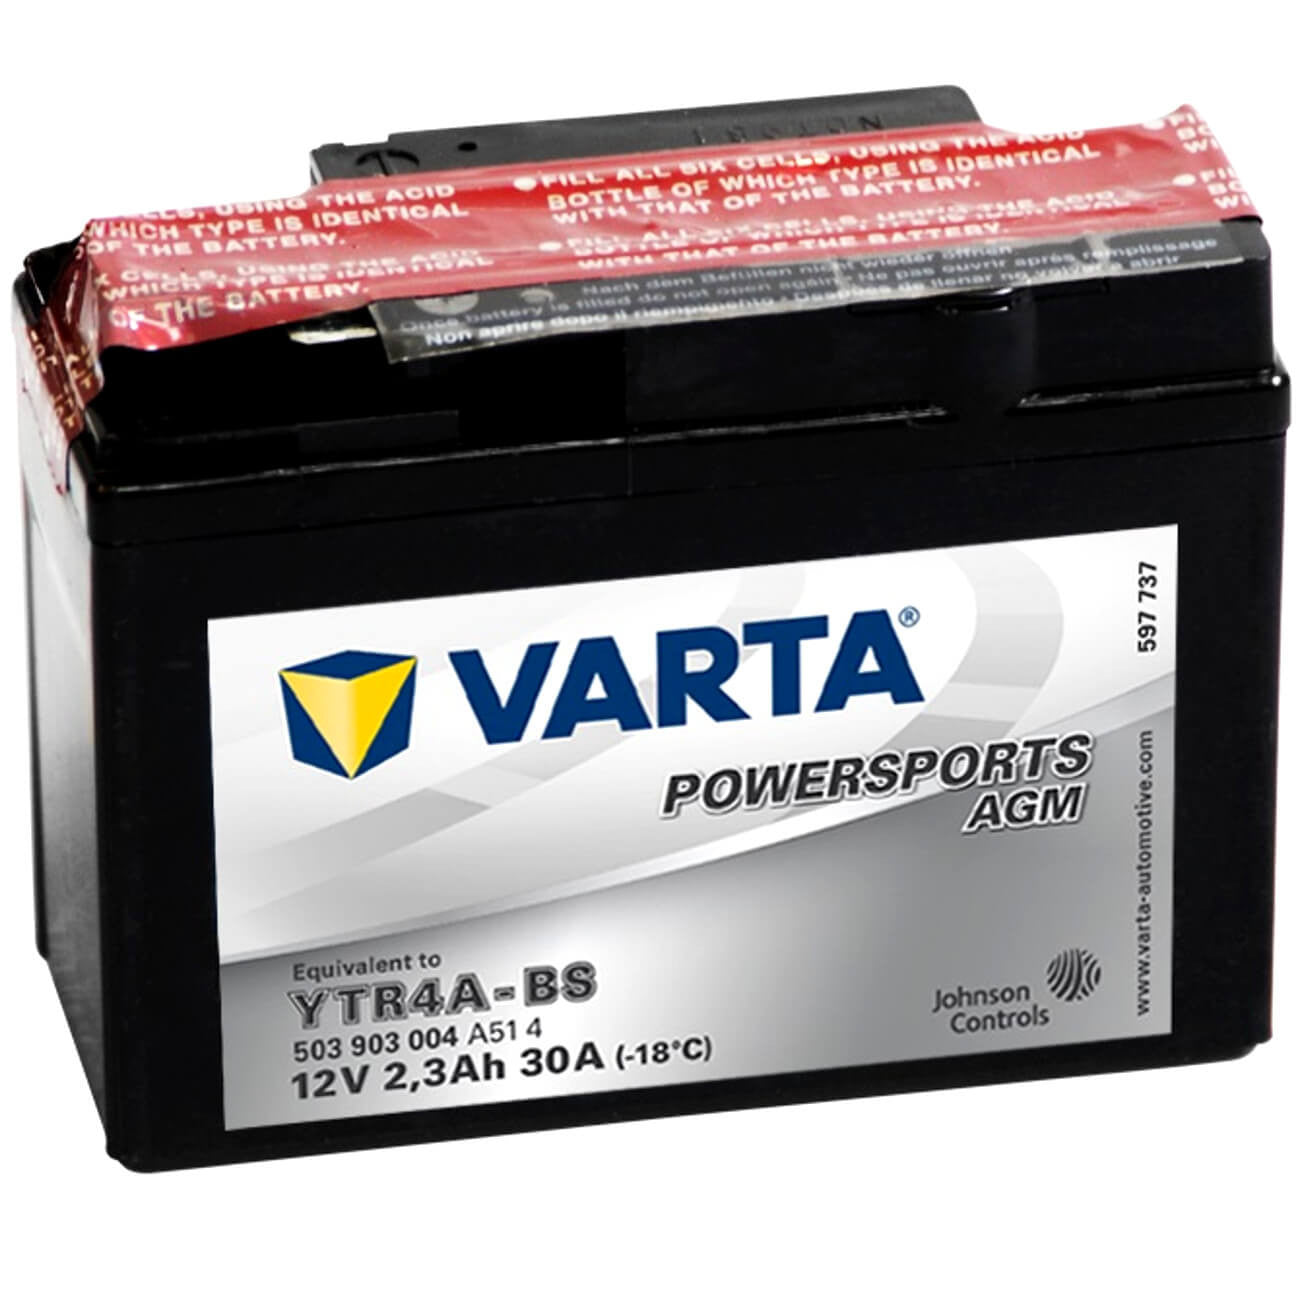 Varta Powersports 503903 AGM 12V 2,3Ah 30A